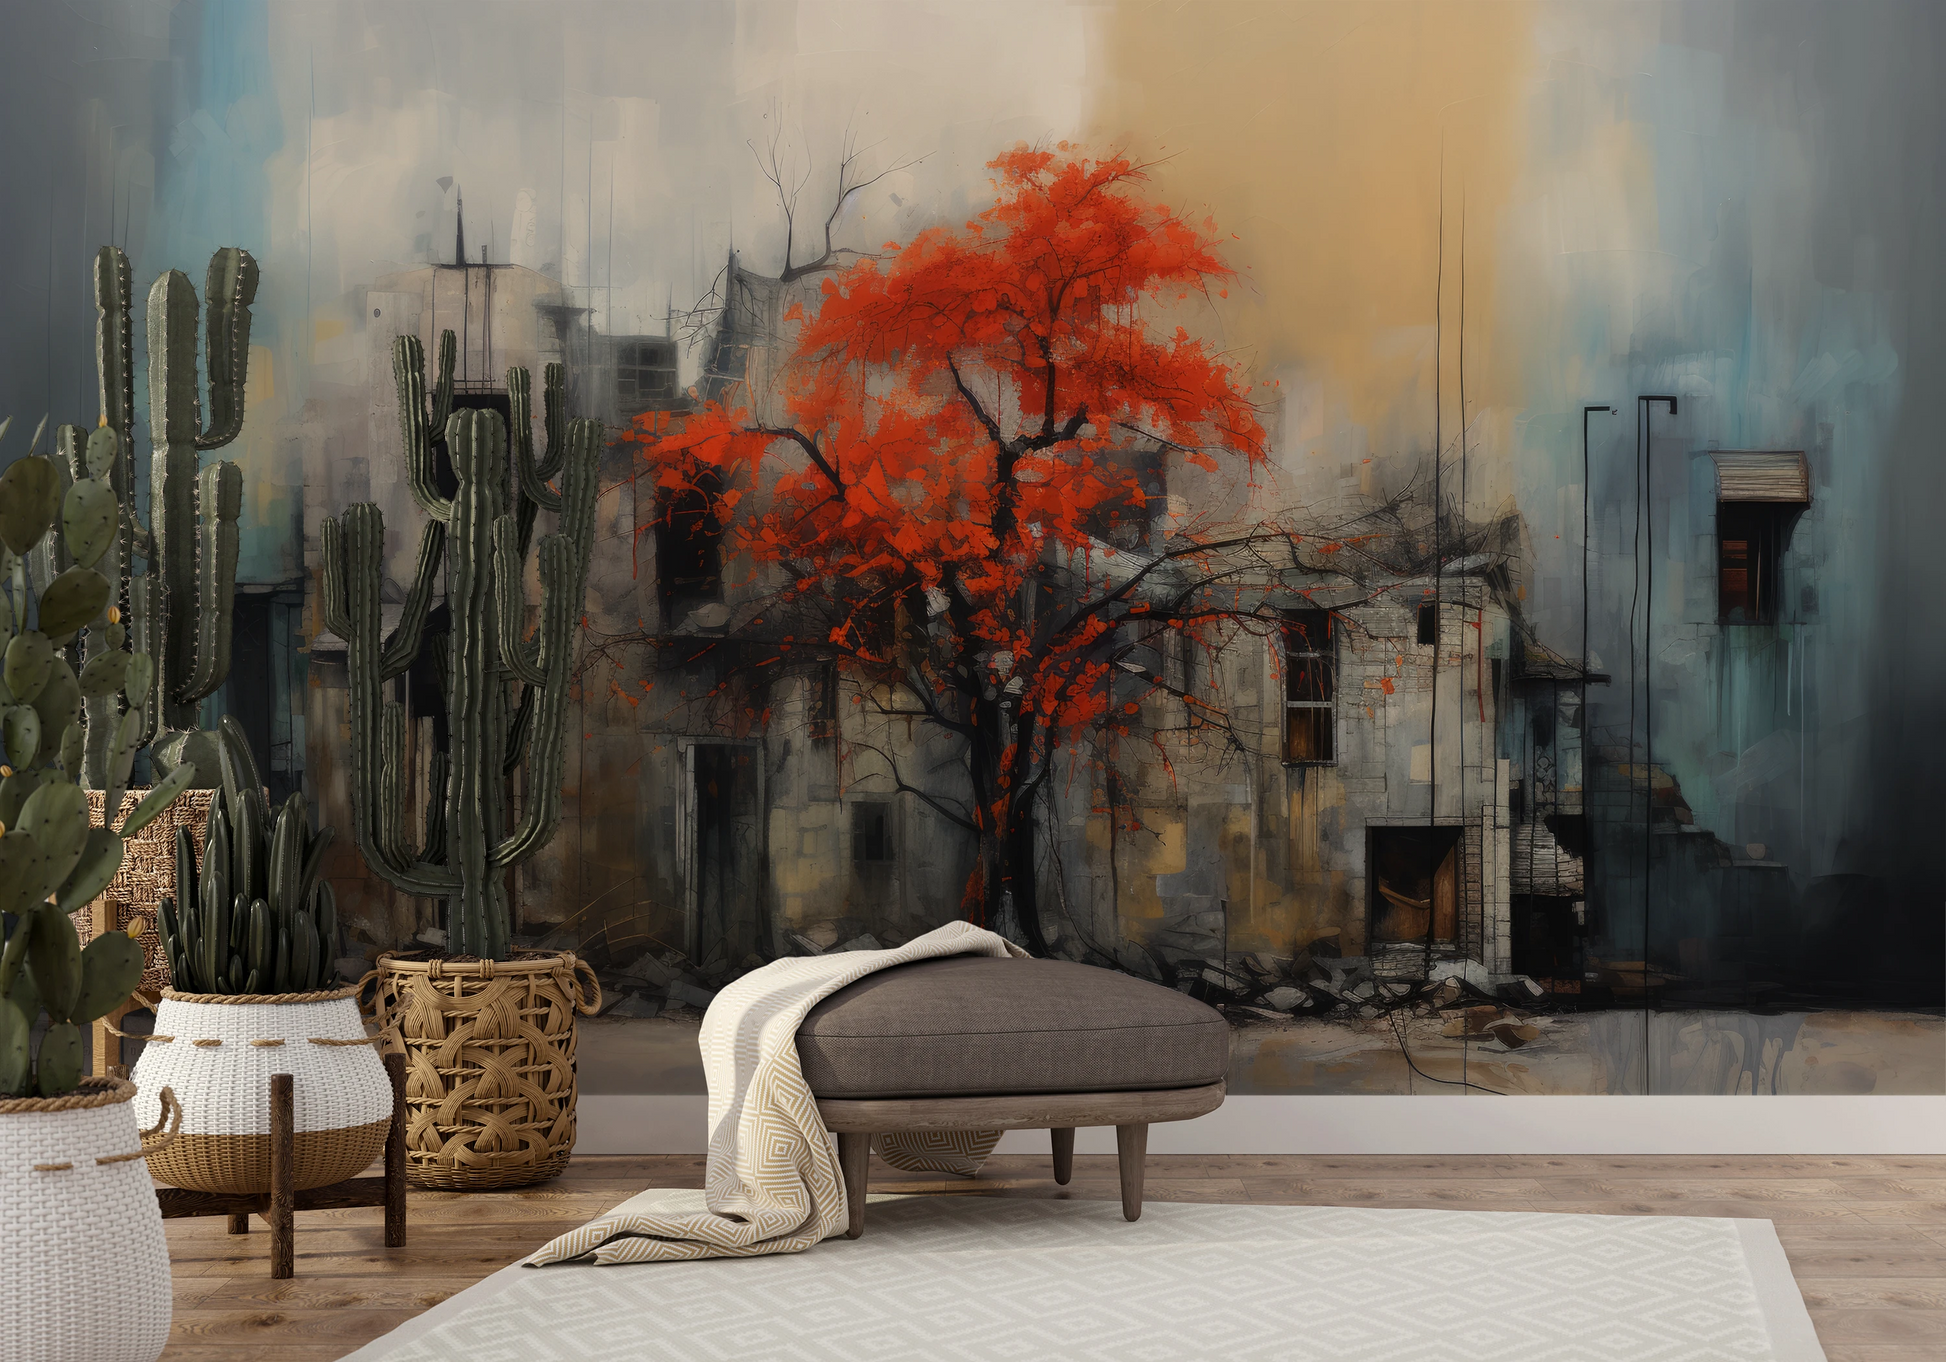 Wzór fototapety malowanej o nazwie Autumn's Contrast pokazanej w aranżacji wnętrza.